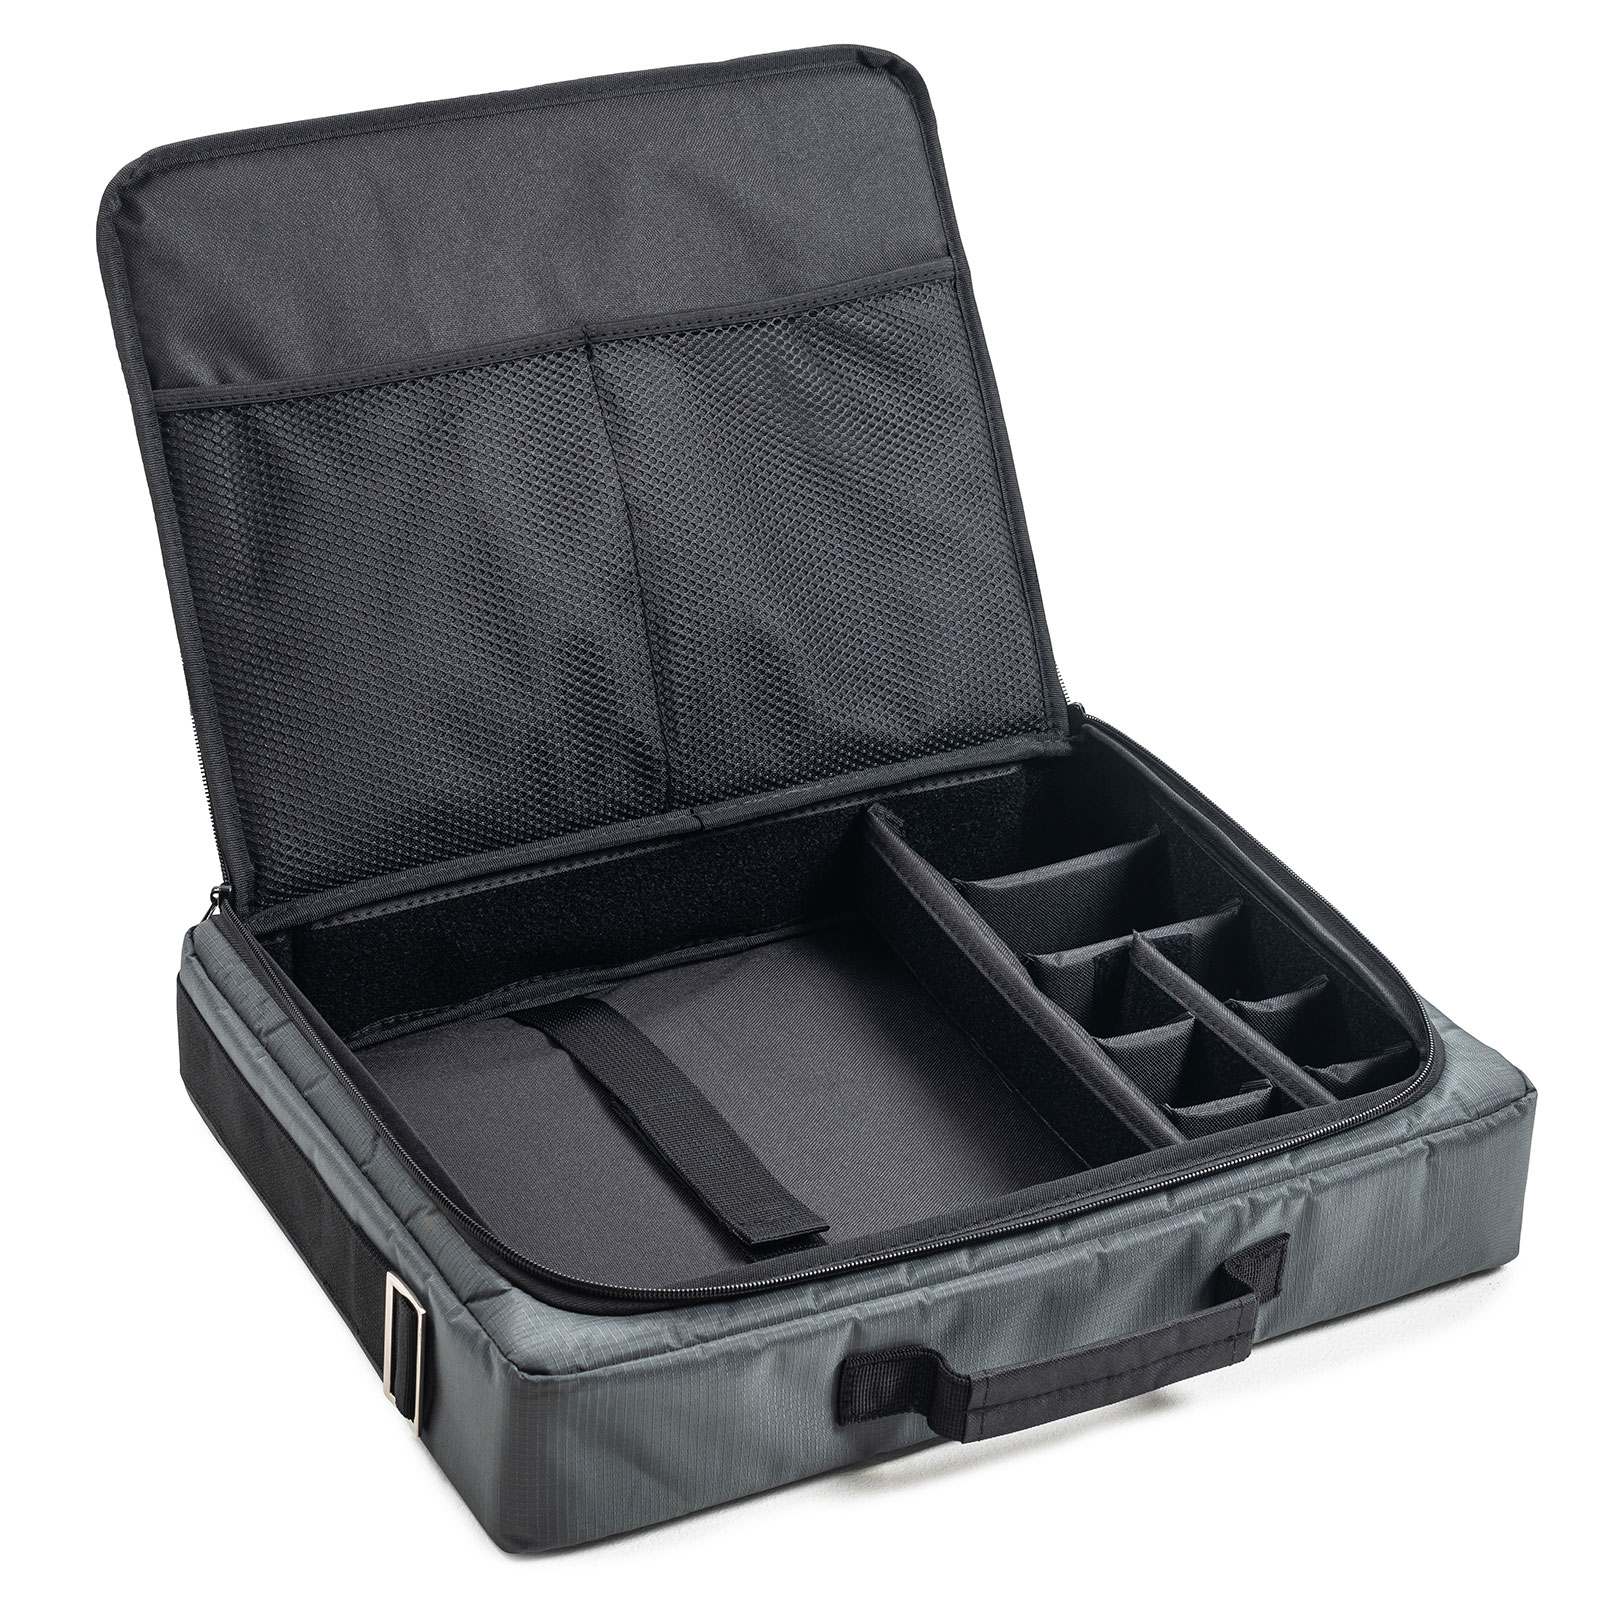 B&W Laptoptasche mit variabler Facheinteilung und Laptopfach für, Outdoor